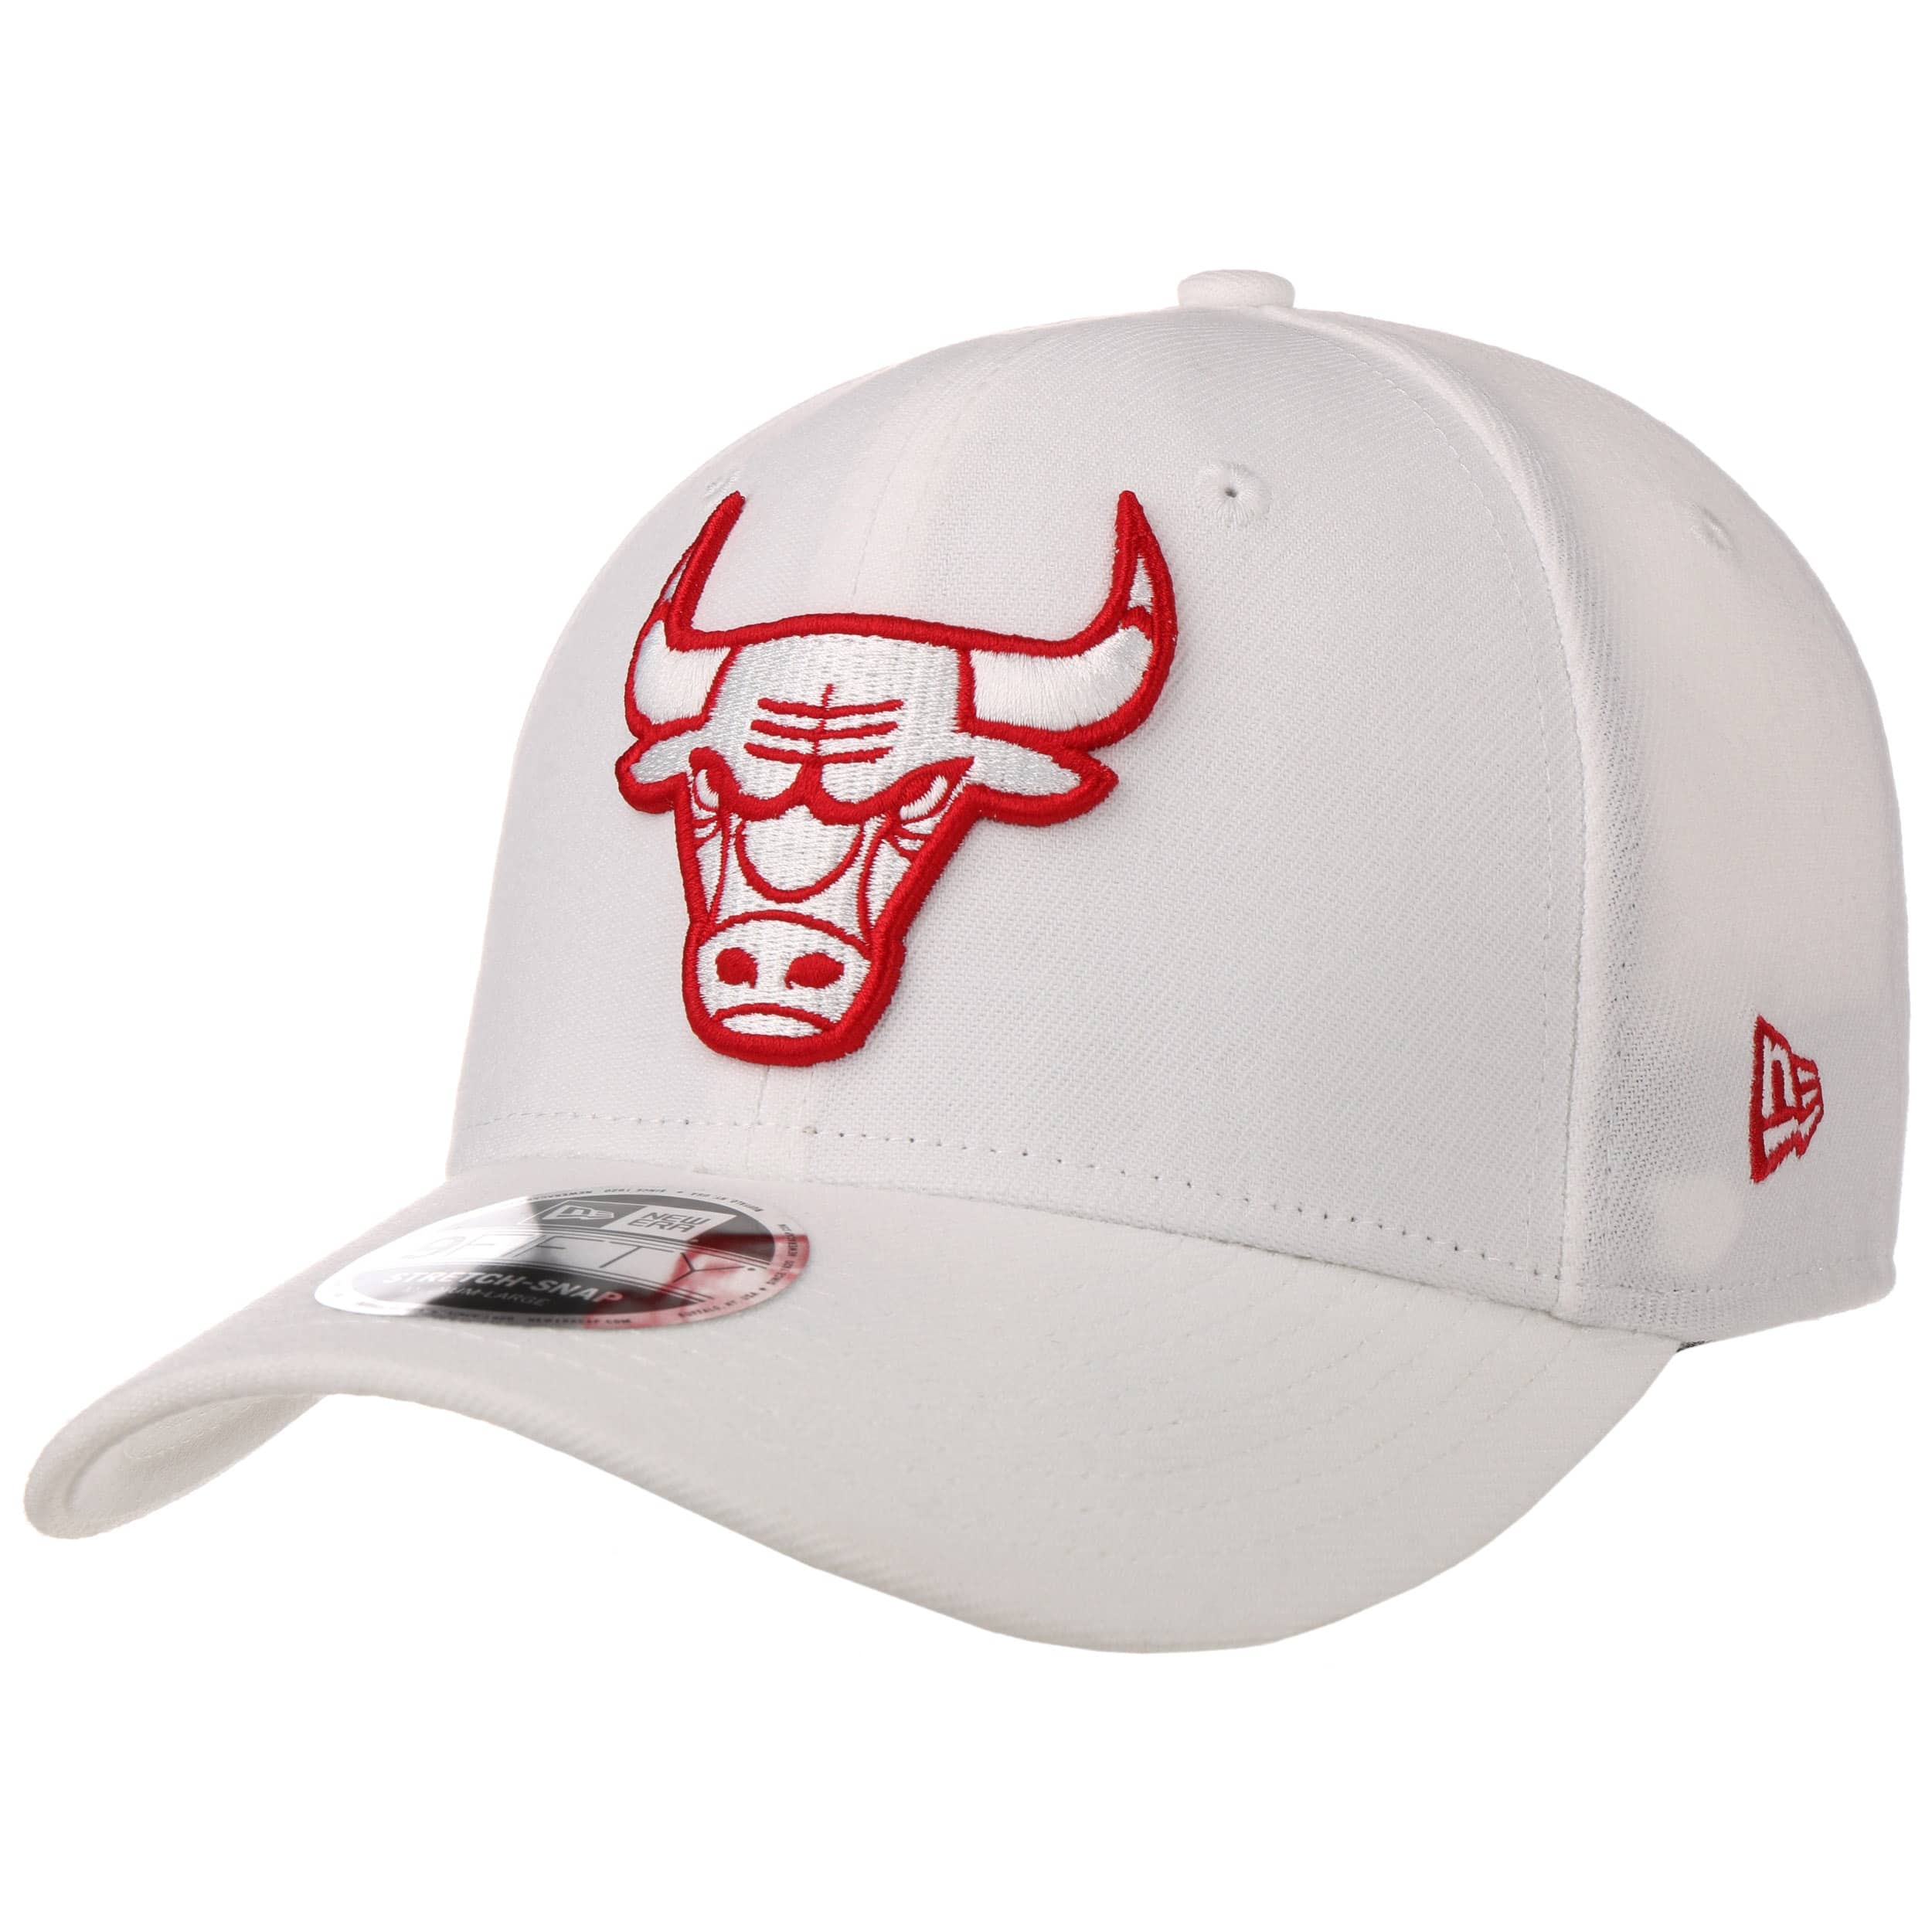 all white chicago bulls hat